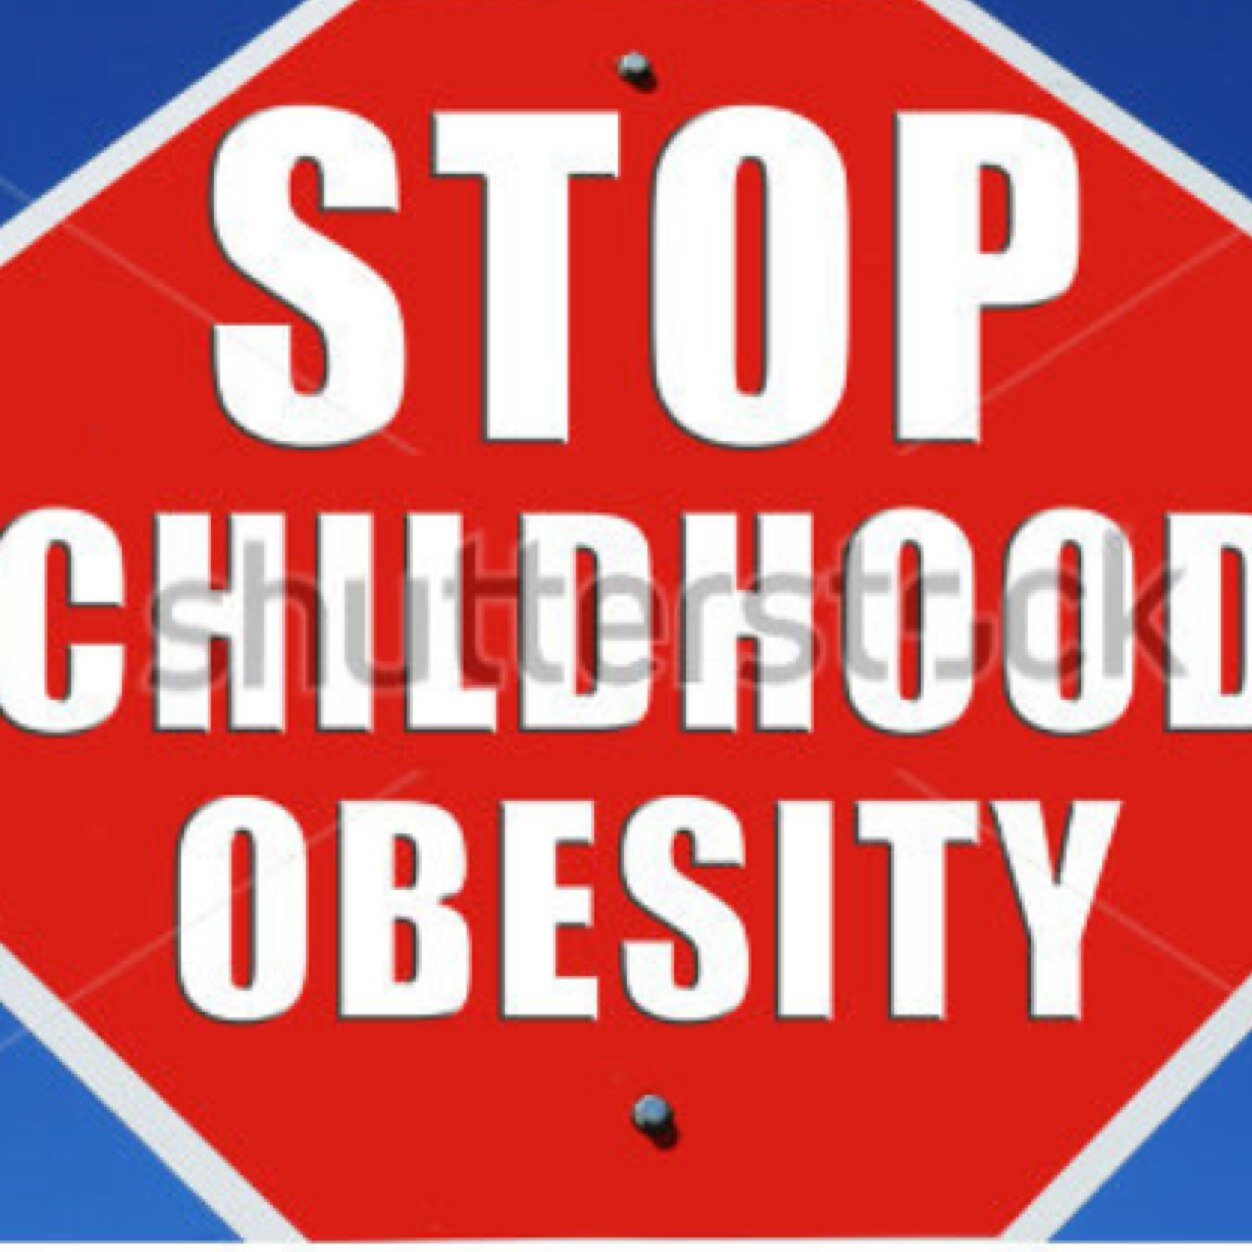 Senior project to end childhood obesity
-Jake Kepler-